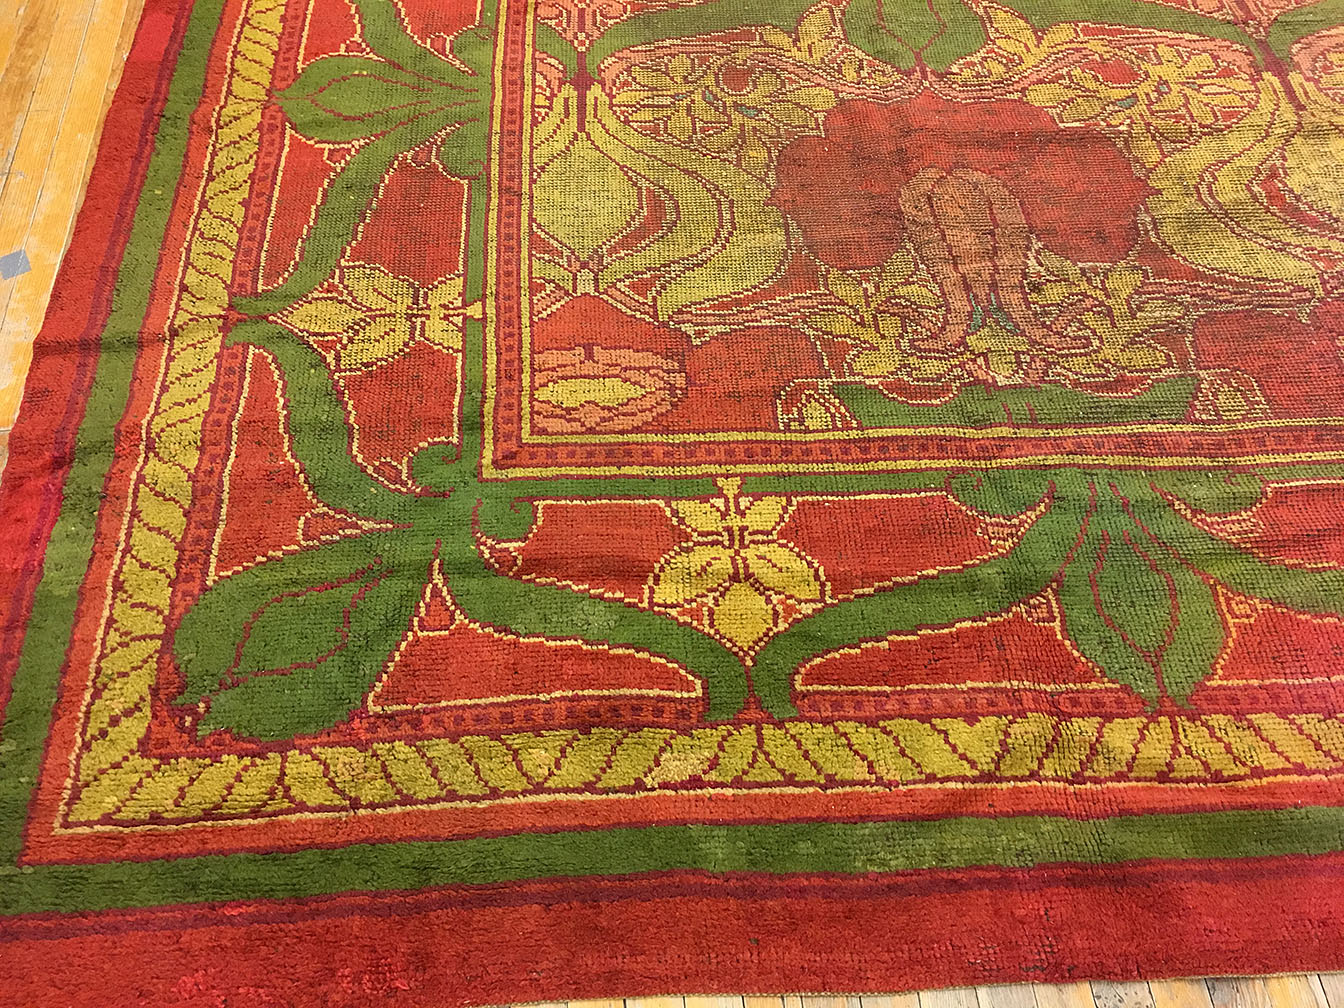 Antique donegal Carpet - # 53775